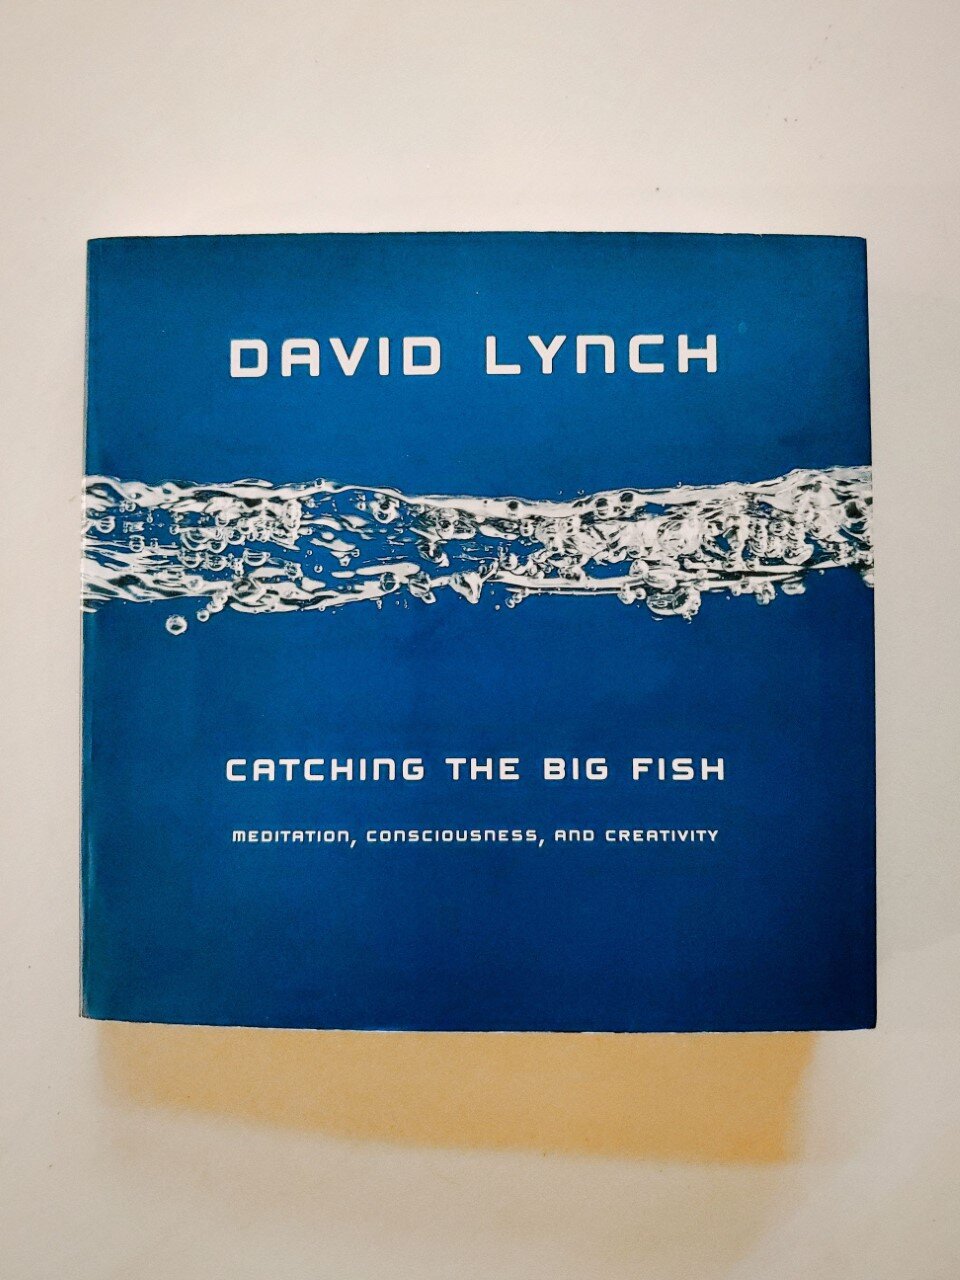  David Lynch book cover   Alycia Ripley @talentedmsripley 